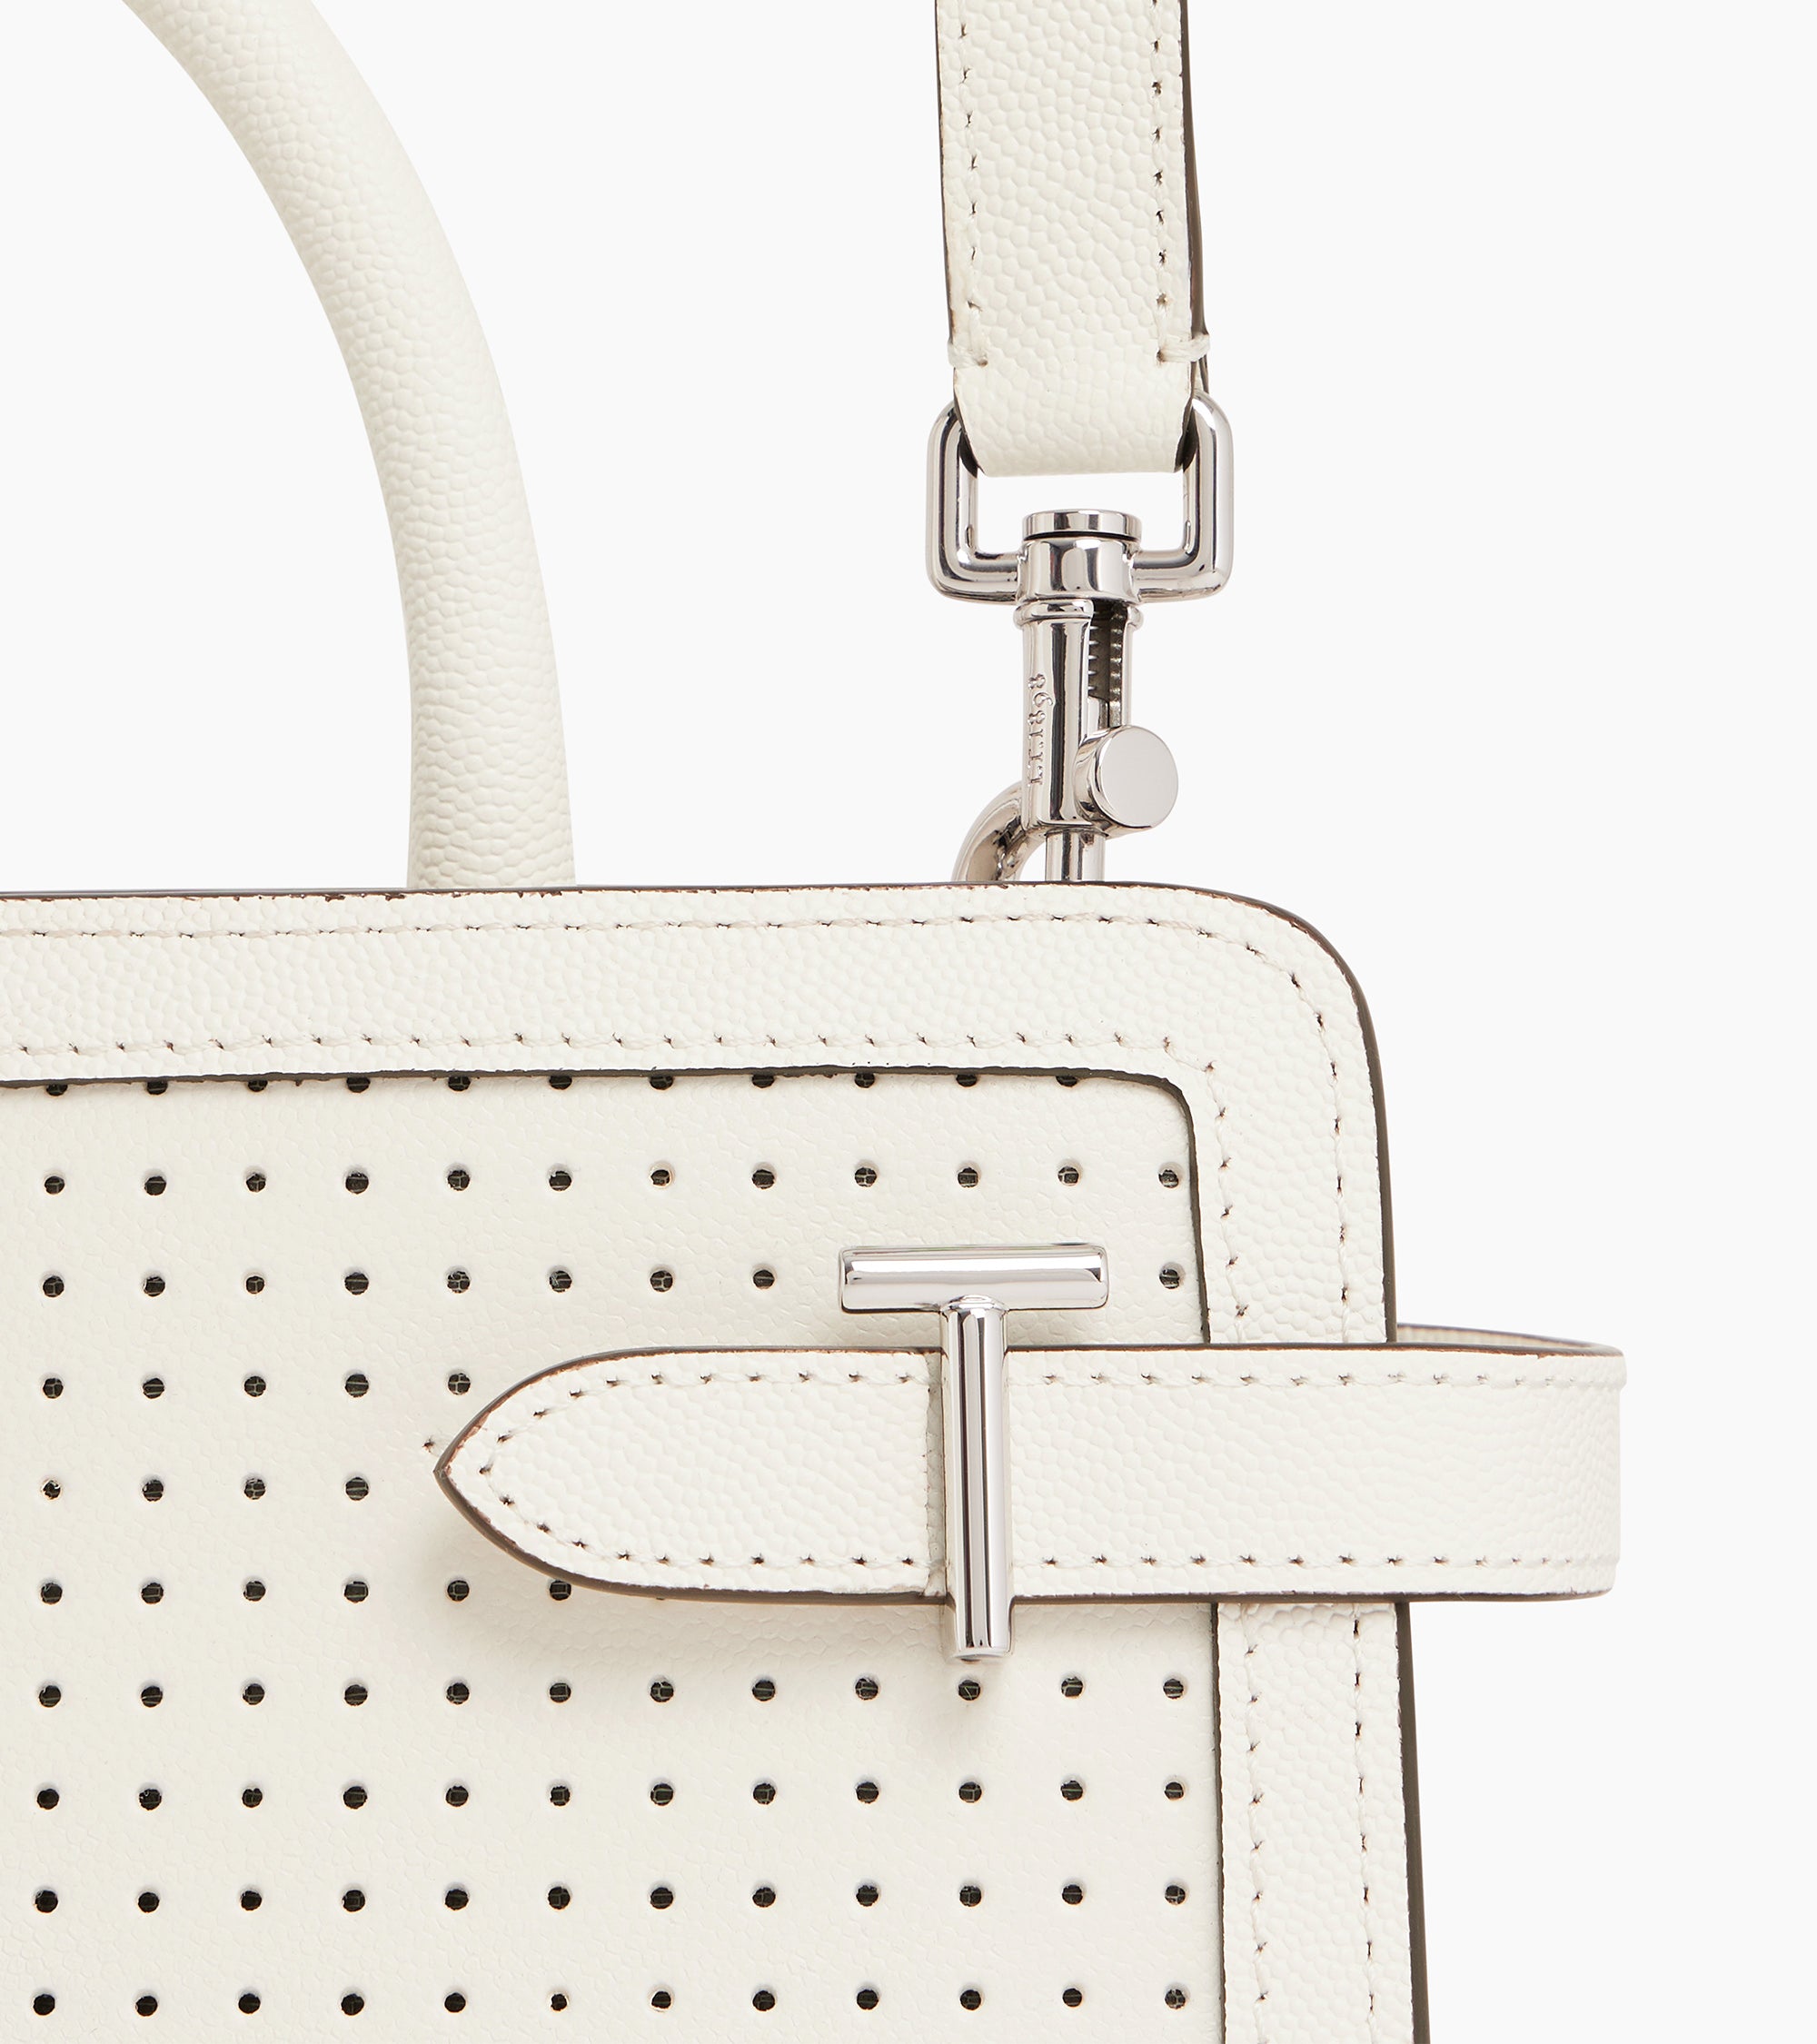 Emilie medium perforated handbag in caviar leather